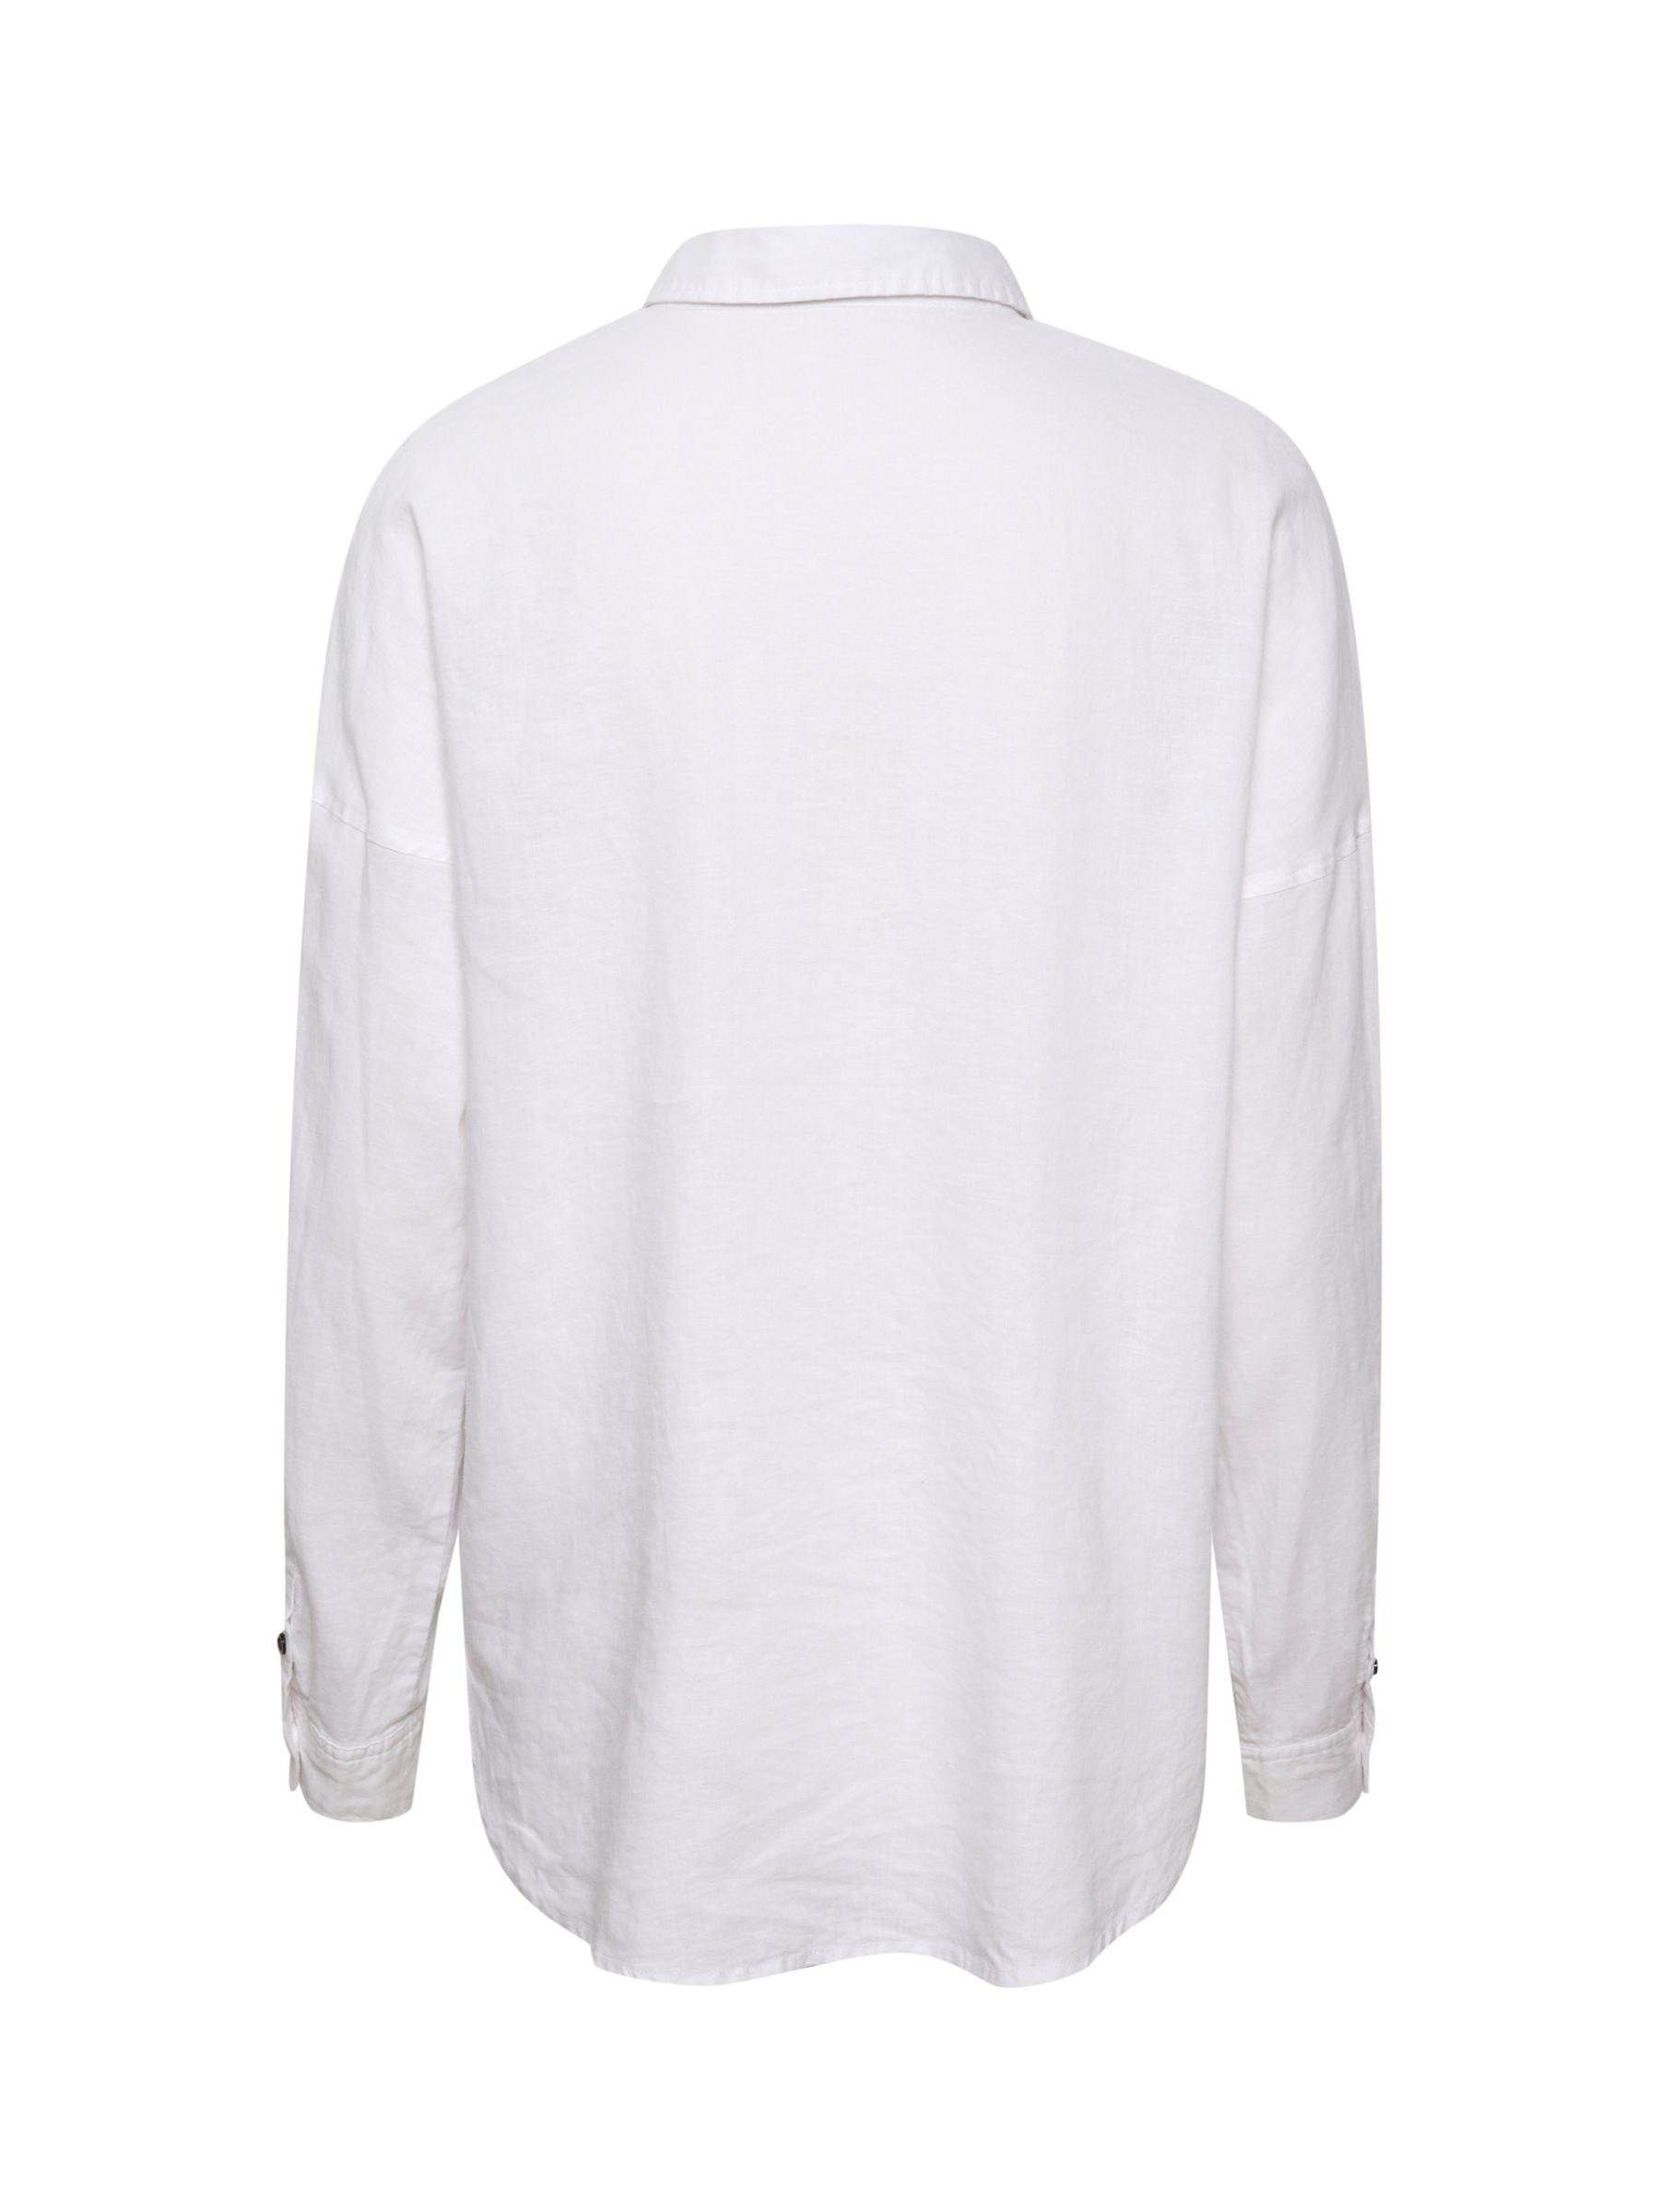 InWear Amos Kiko Relaxed Fit Long Sleeve Shirt, Pure White at John ...